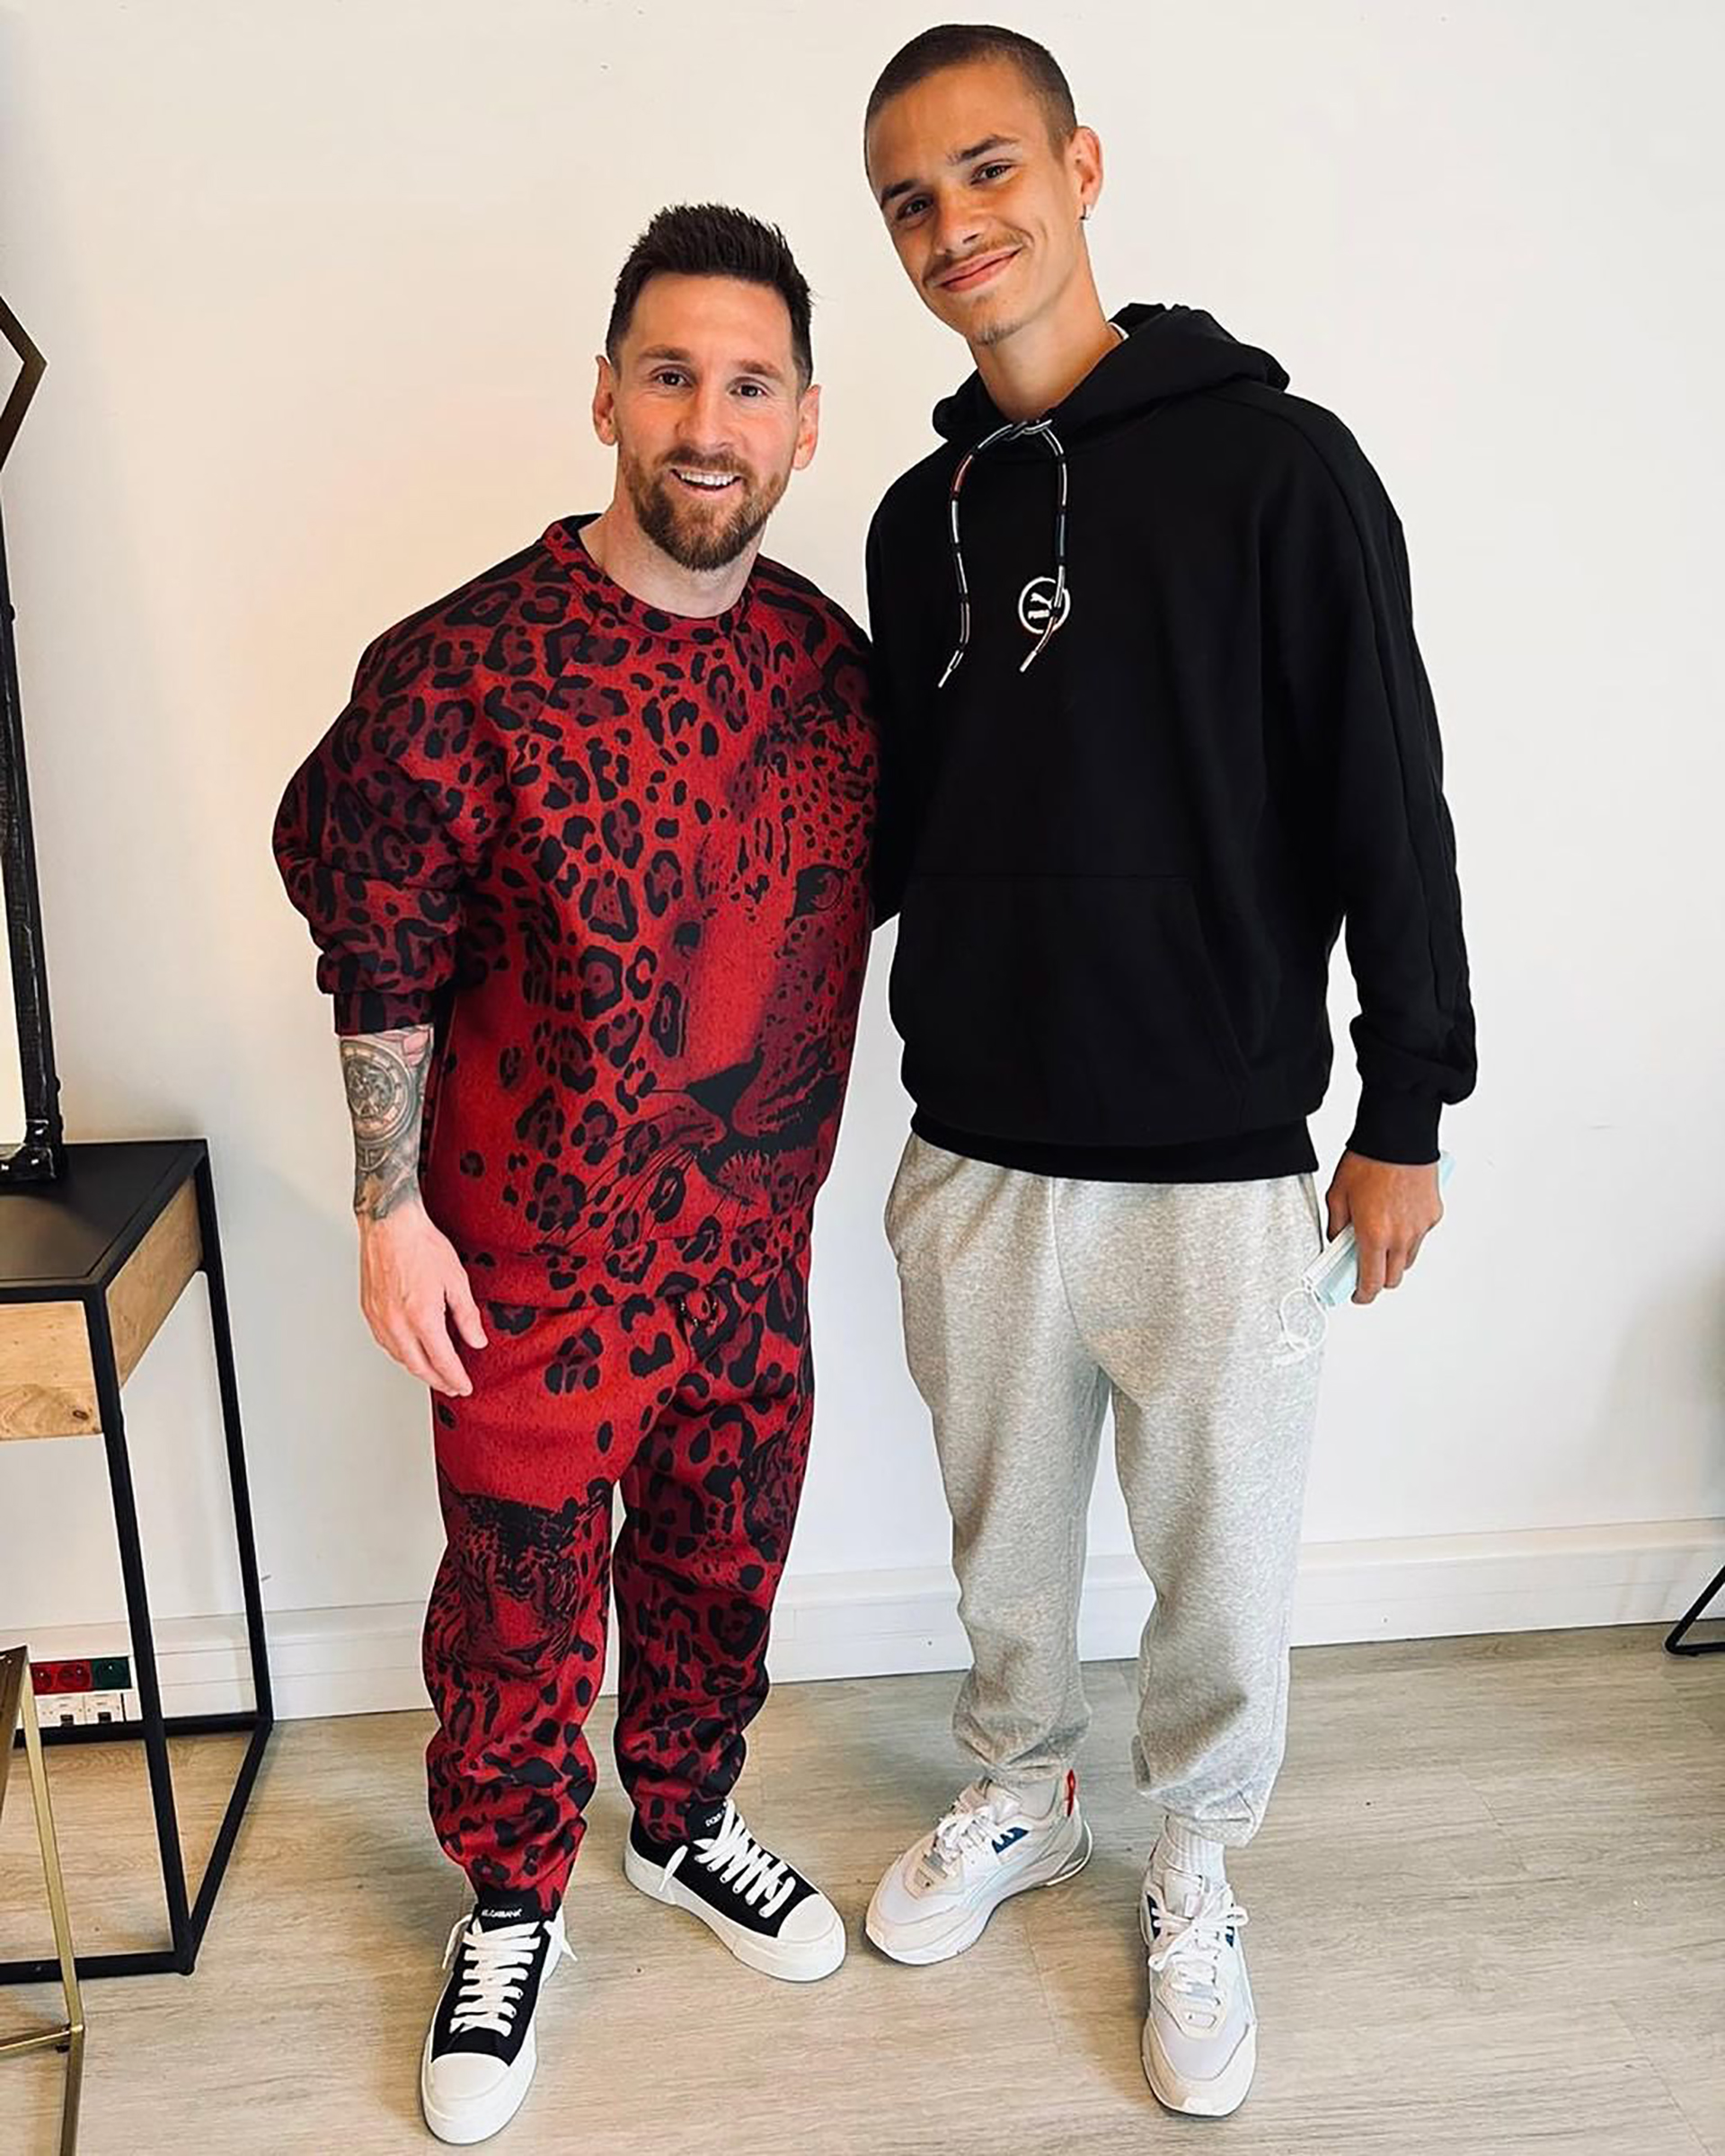 El excéntrico look de Lionel Messi en su encuentro con el hijo de David  Beckham que generó una catarata de memes y bromas en las redes - Infobae